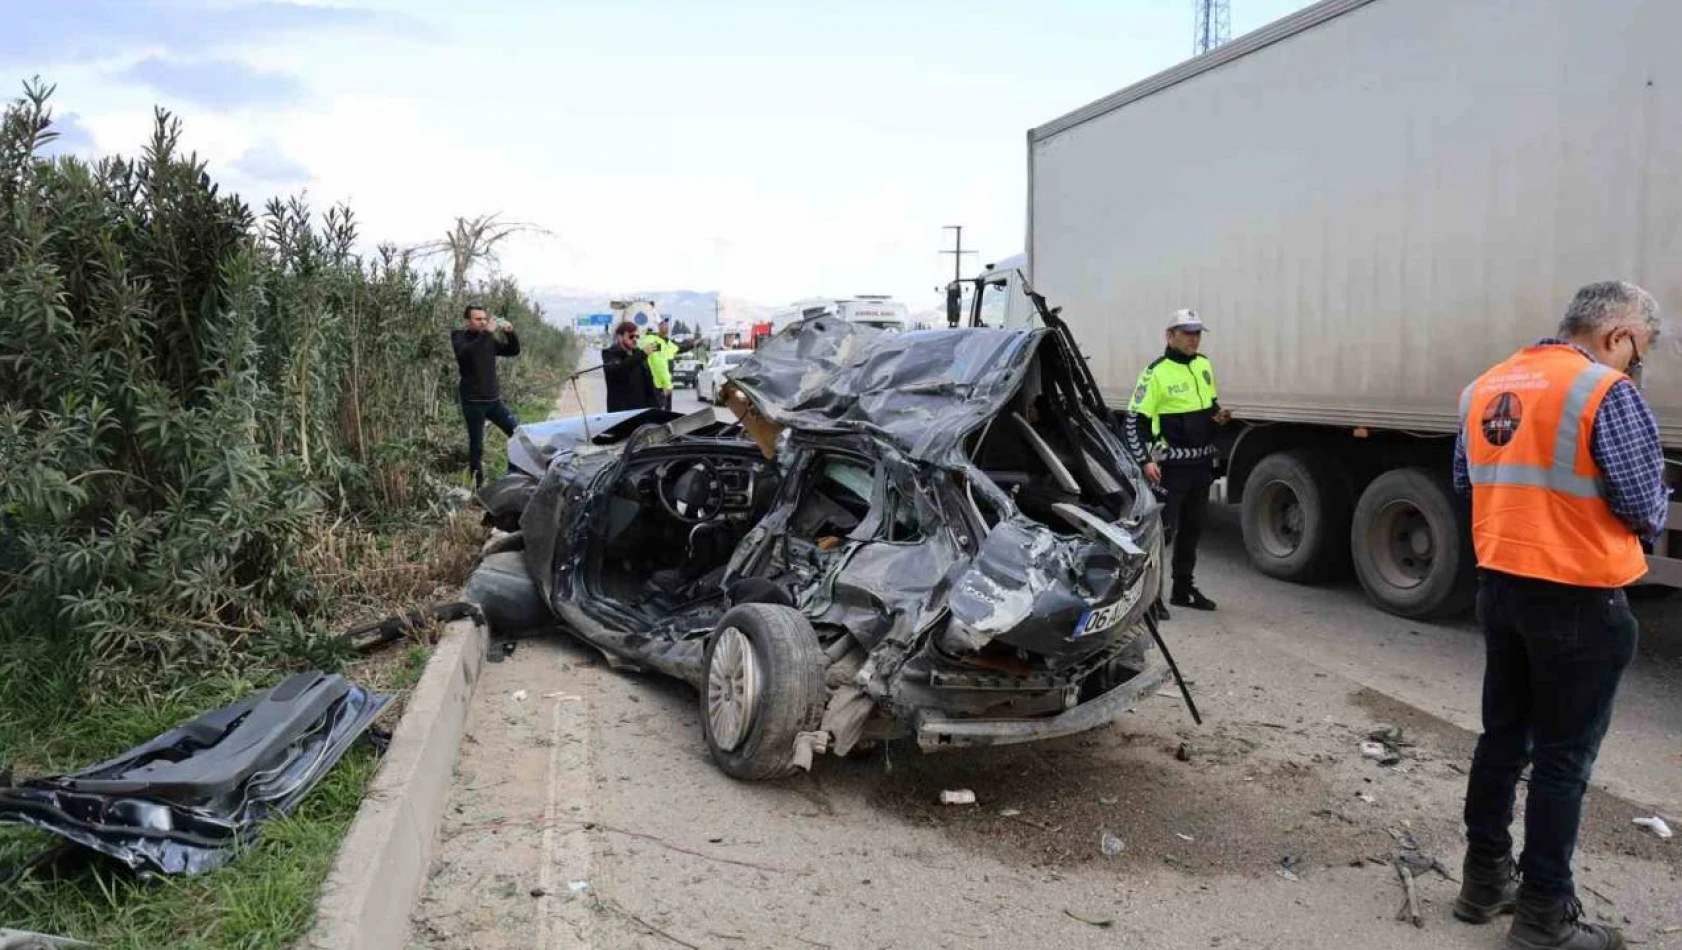 Adana'da otomobil karşı şeride geçip midibüse çarptı: 2 ölü, 14 yaralı